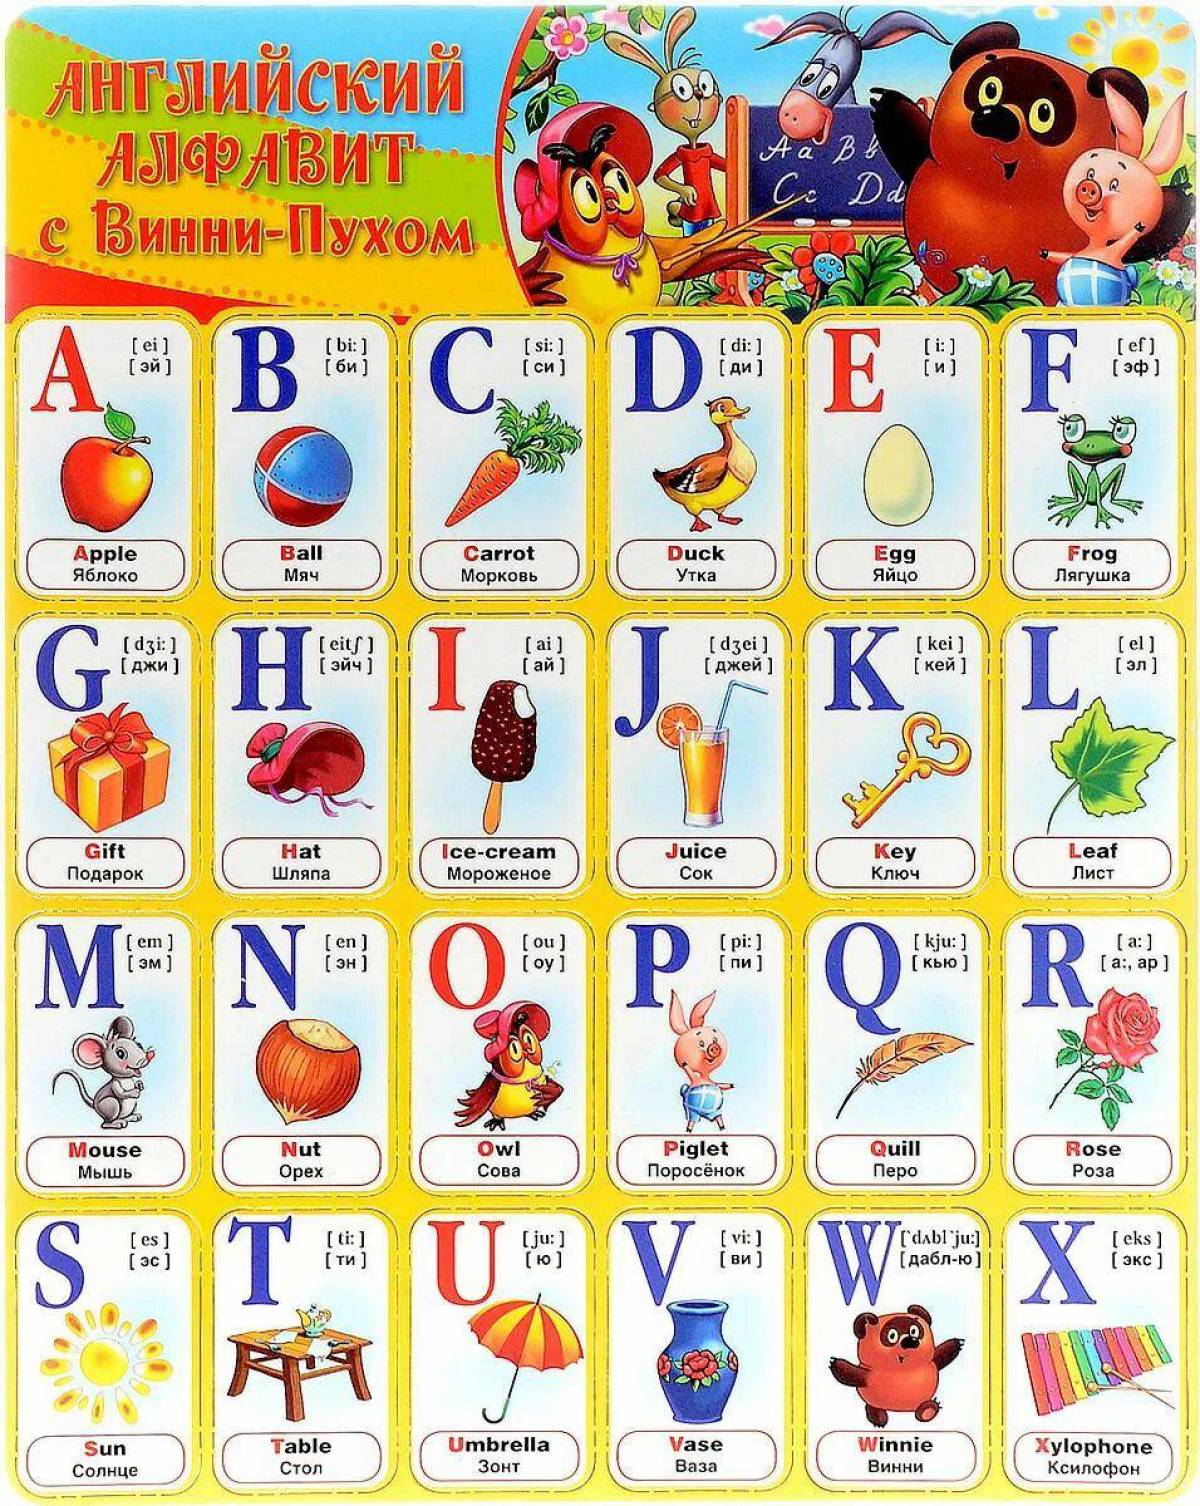 Скопировать английские буквы. Английский алфавит для детей произношение букв. Английский алфавит с русской транскрипцией и произношением для детей. Английский алфавит длядетец. Английская Азбука для детей.